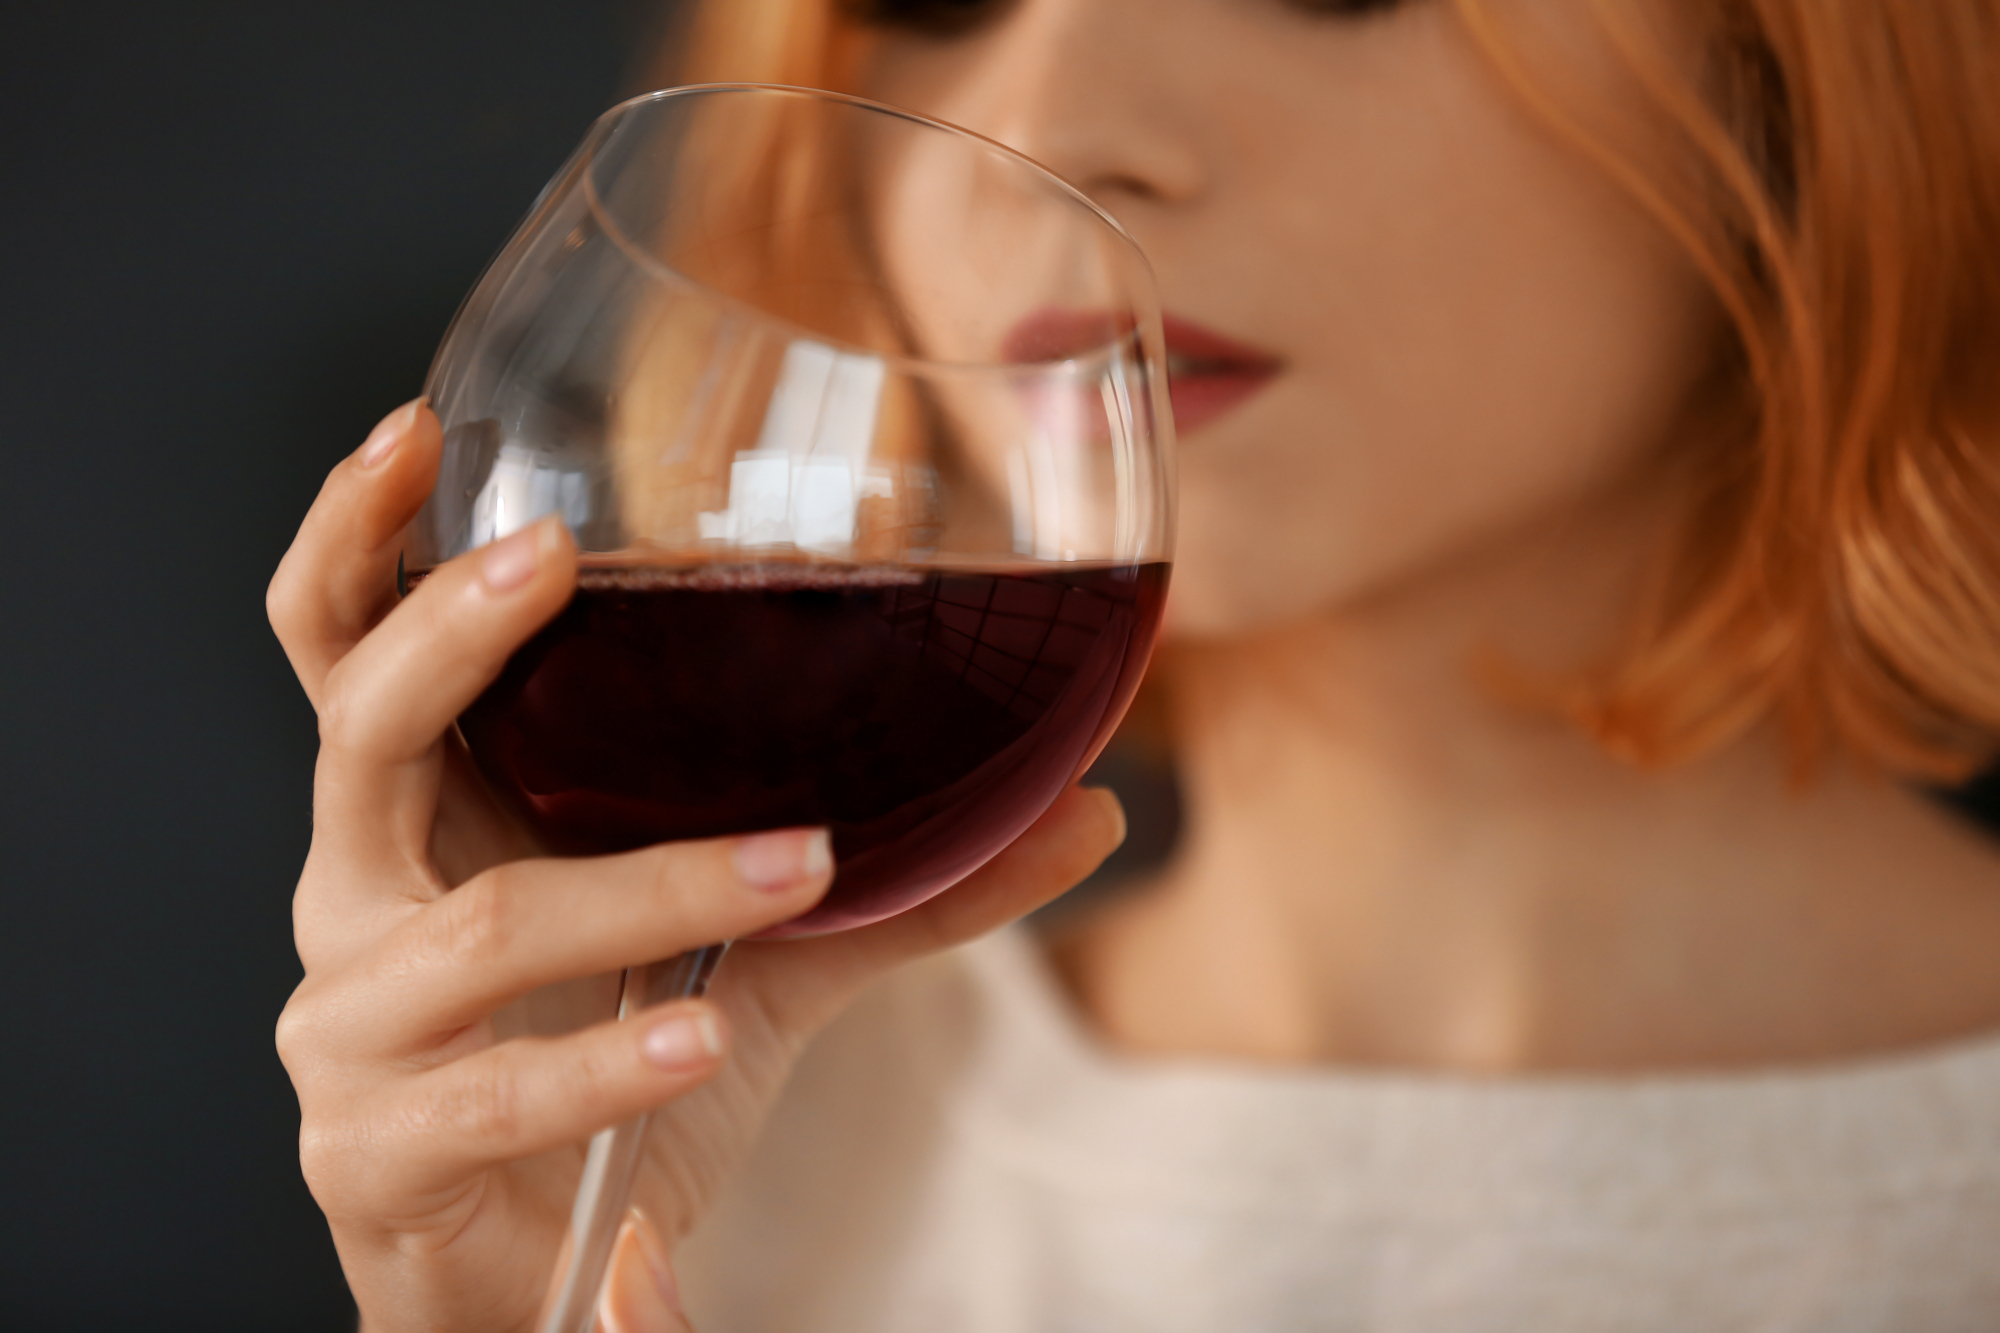 Οι γυναίκες πίνουν περισσότερο αλκοόλ και πεθαίνουν συχνότερα από αυτό – Νέα έρευνα